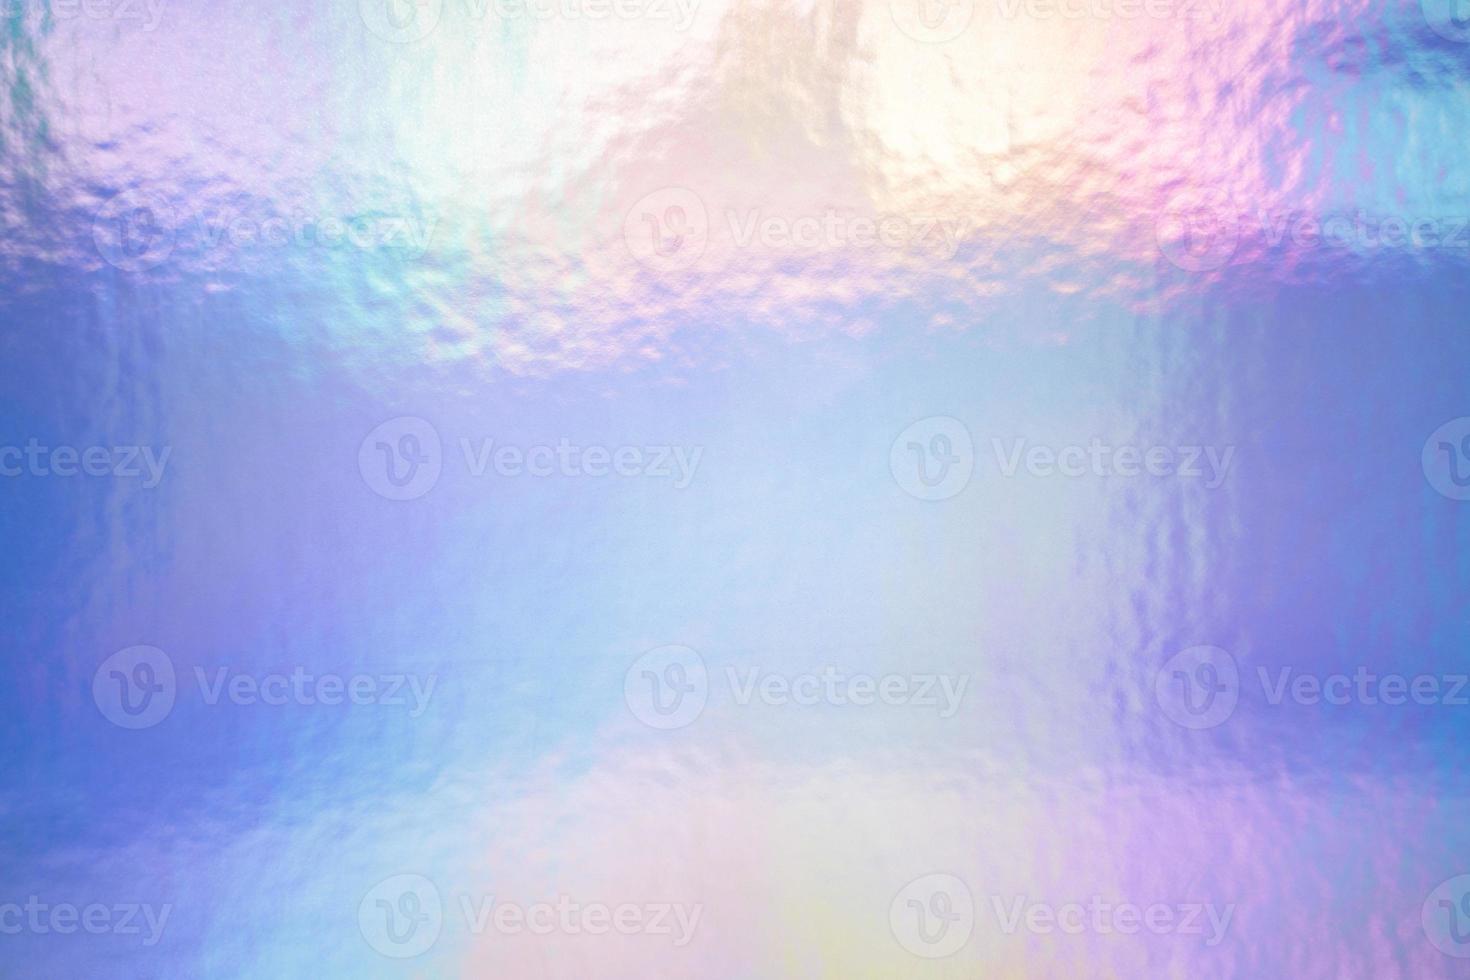 een iriserende holografische folie pastelkleuren als achtergrond foto